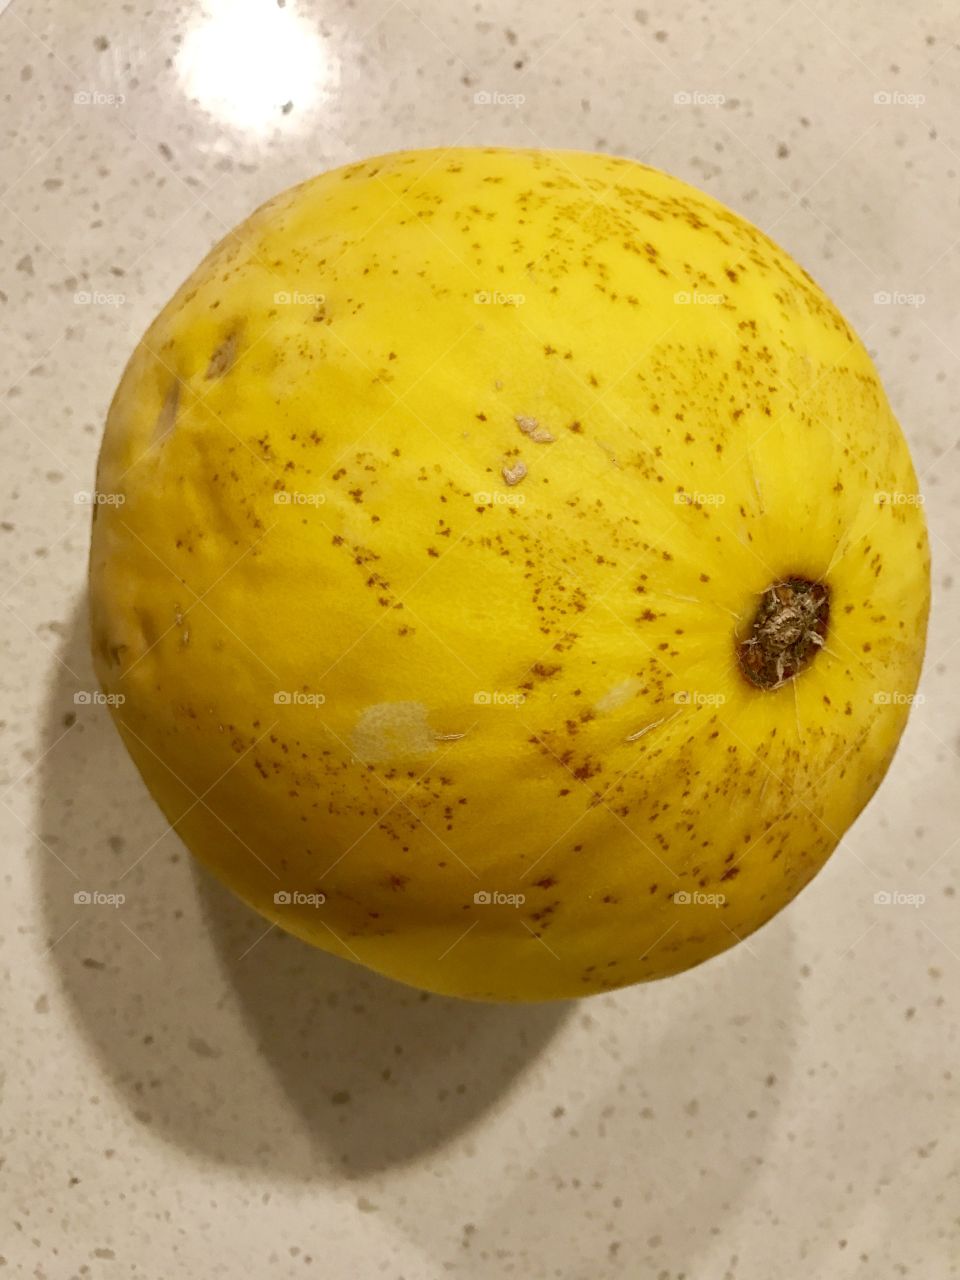 Canary melon - golden color fruit